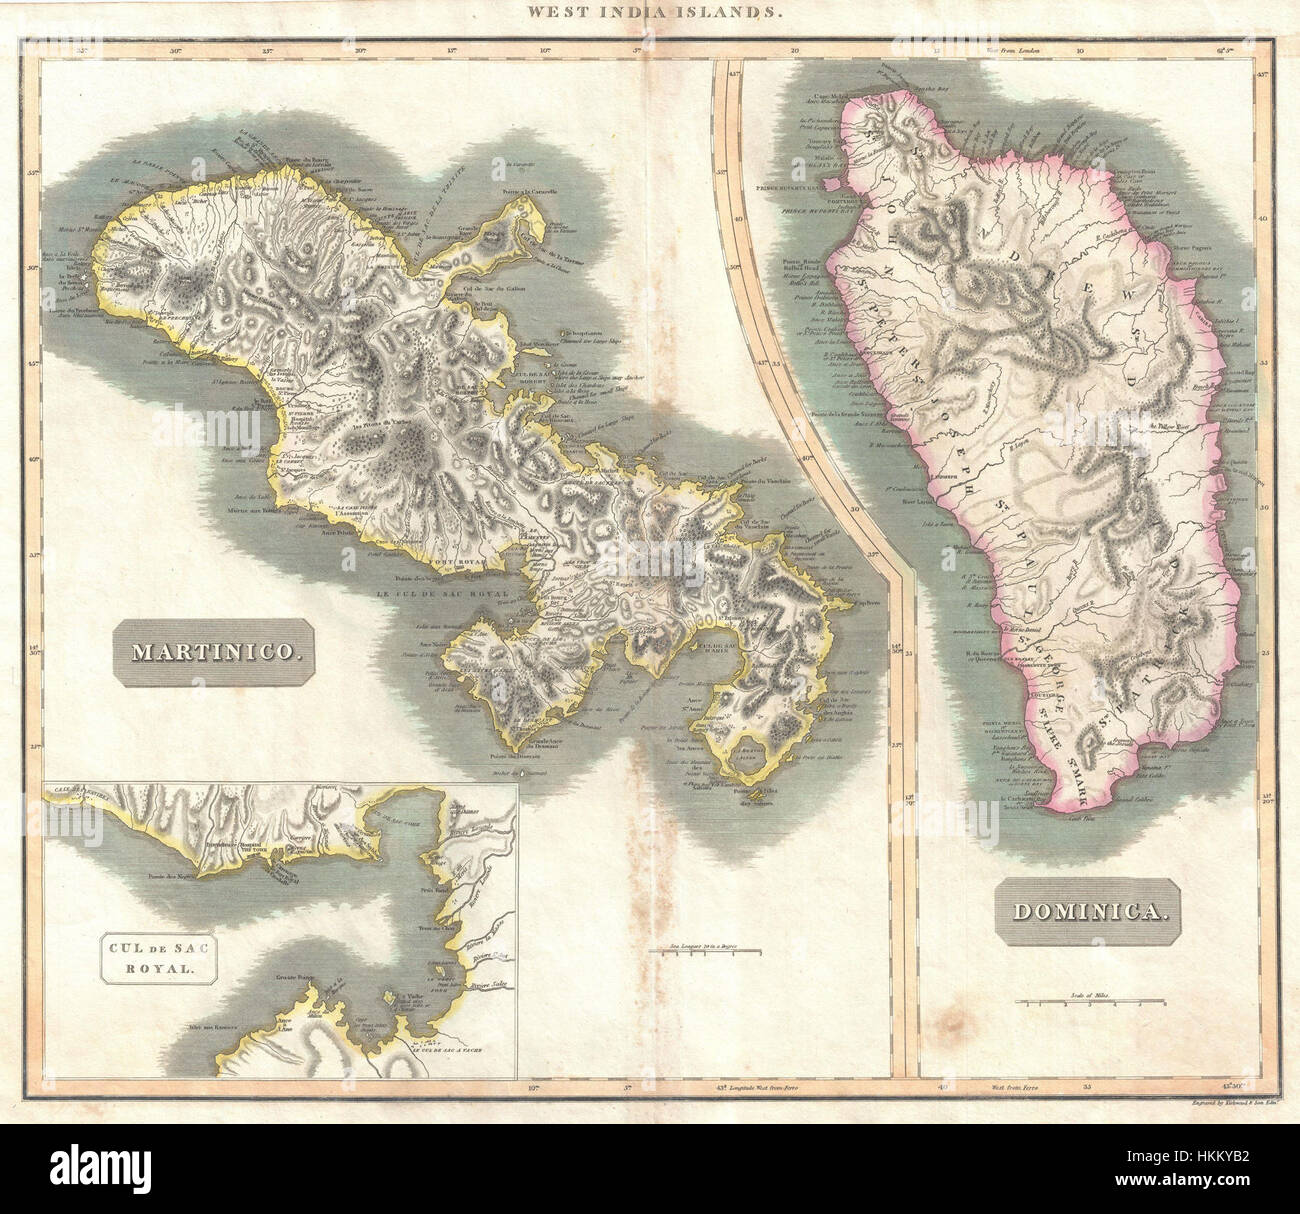 Thomson 1814 Plan de la Martinique et la Dominique ( Antilles ) - Geographicus - MartiniqueDominica-thomson-1814 Banque D'Images